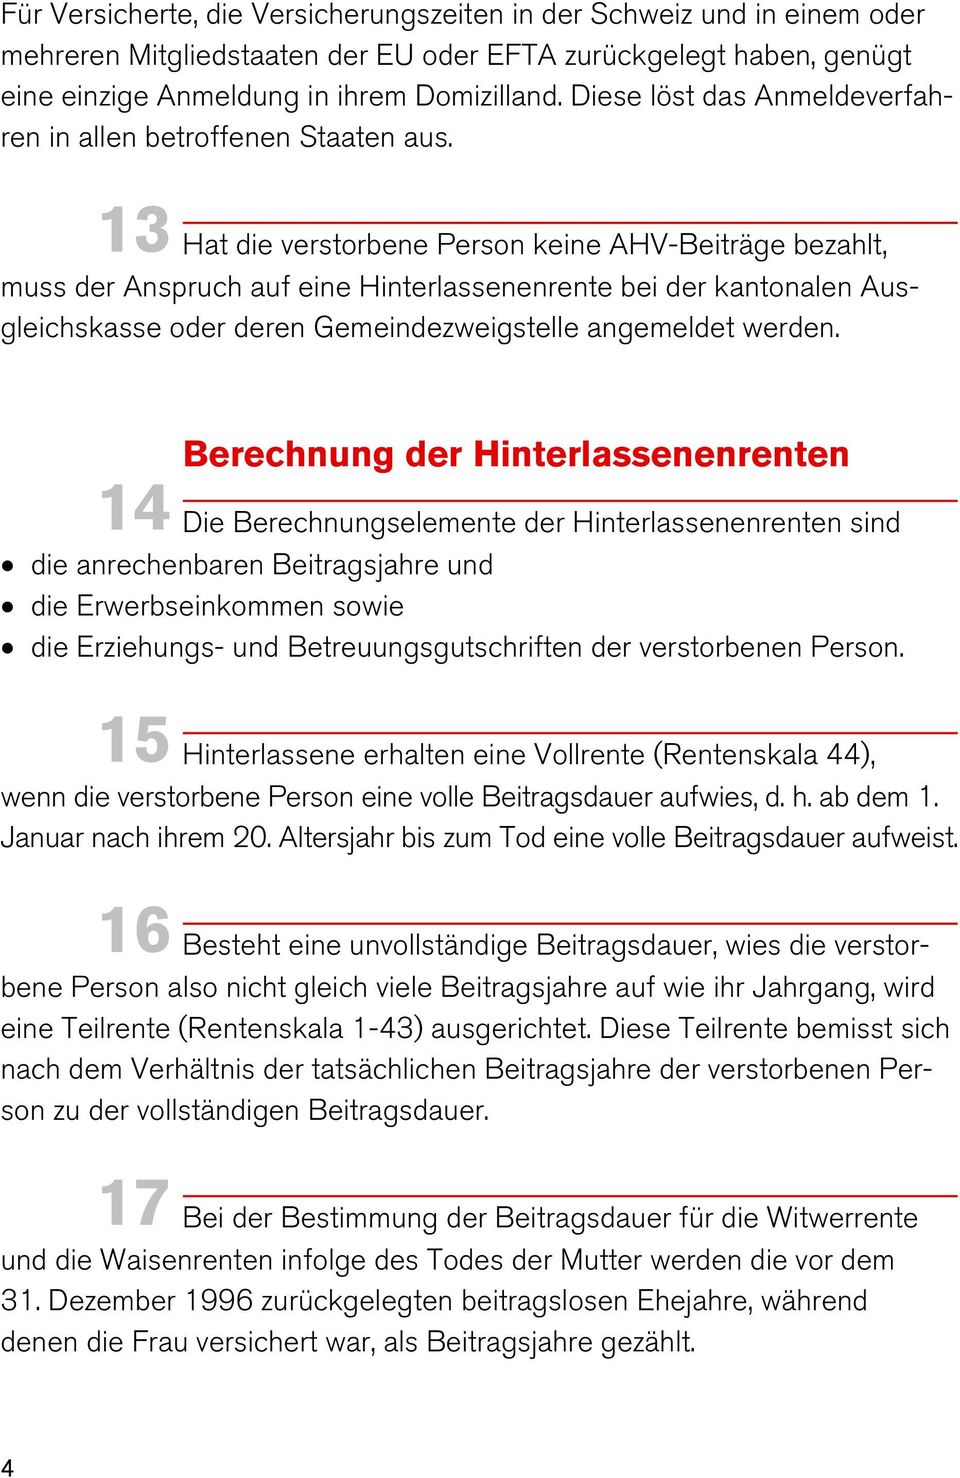 13 Hat die verstorbene Person keine AHV-Beiträge bezahlt, muss der Anspruch auf eine Hinterlassenenrente bei der kantonalen Ausgleichskasse oder deren Gemeindezweigstelle angemeldet werden.